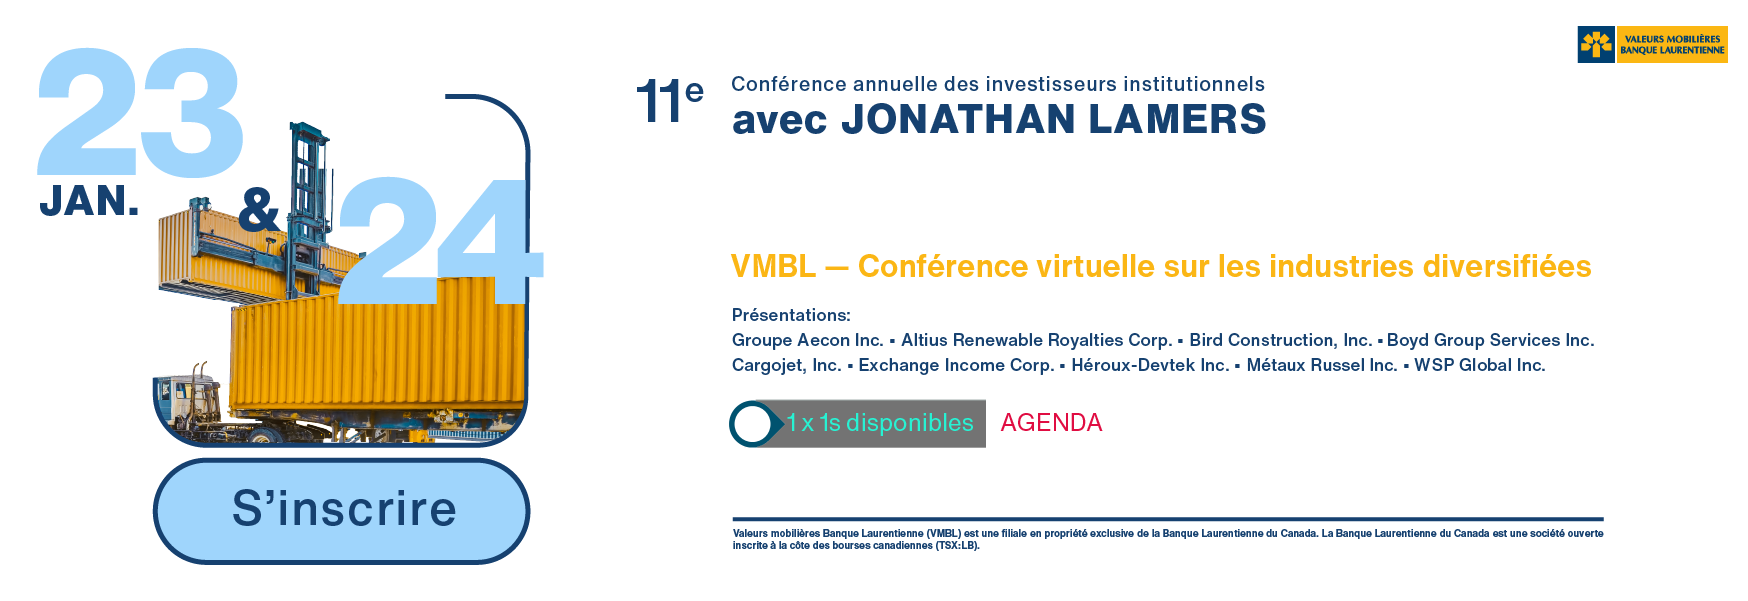 VMBL — Conférence virtuelle sur les industries diversifiées